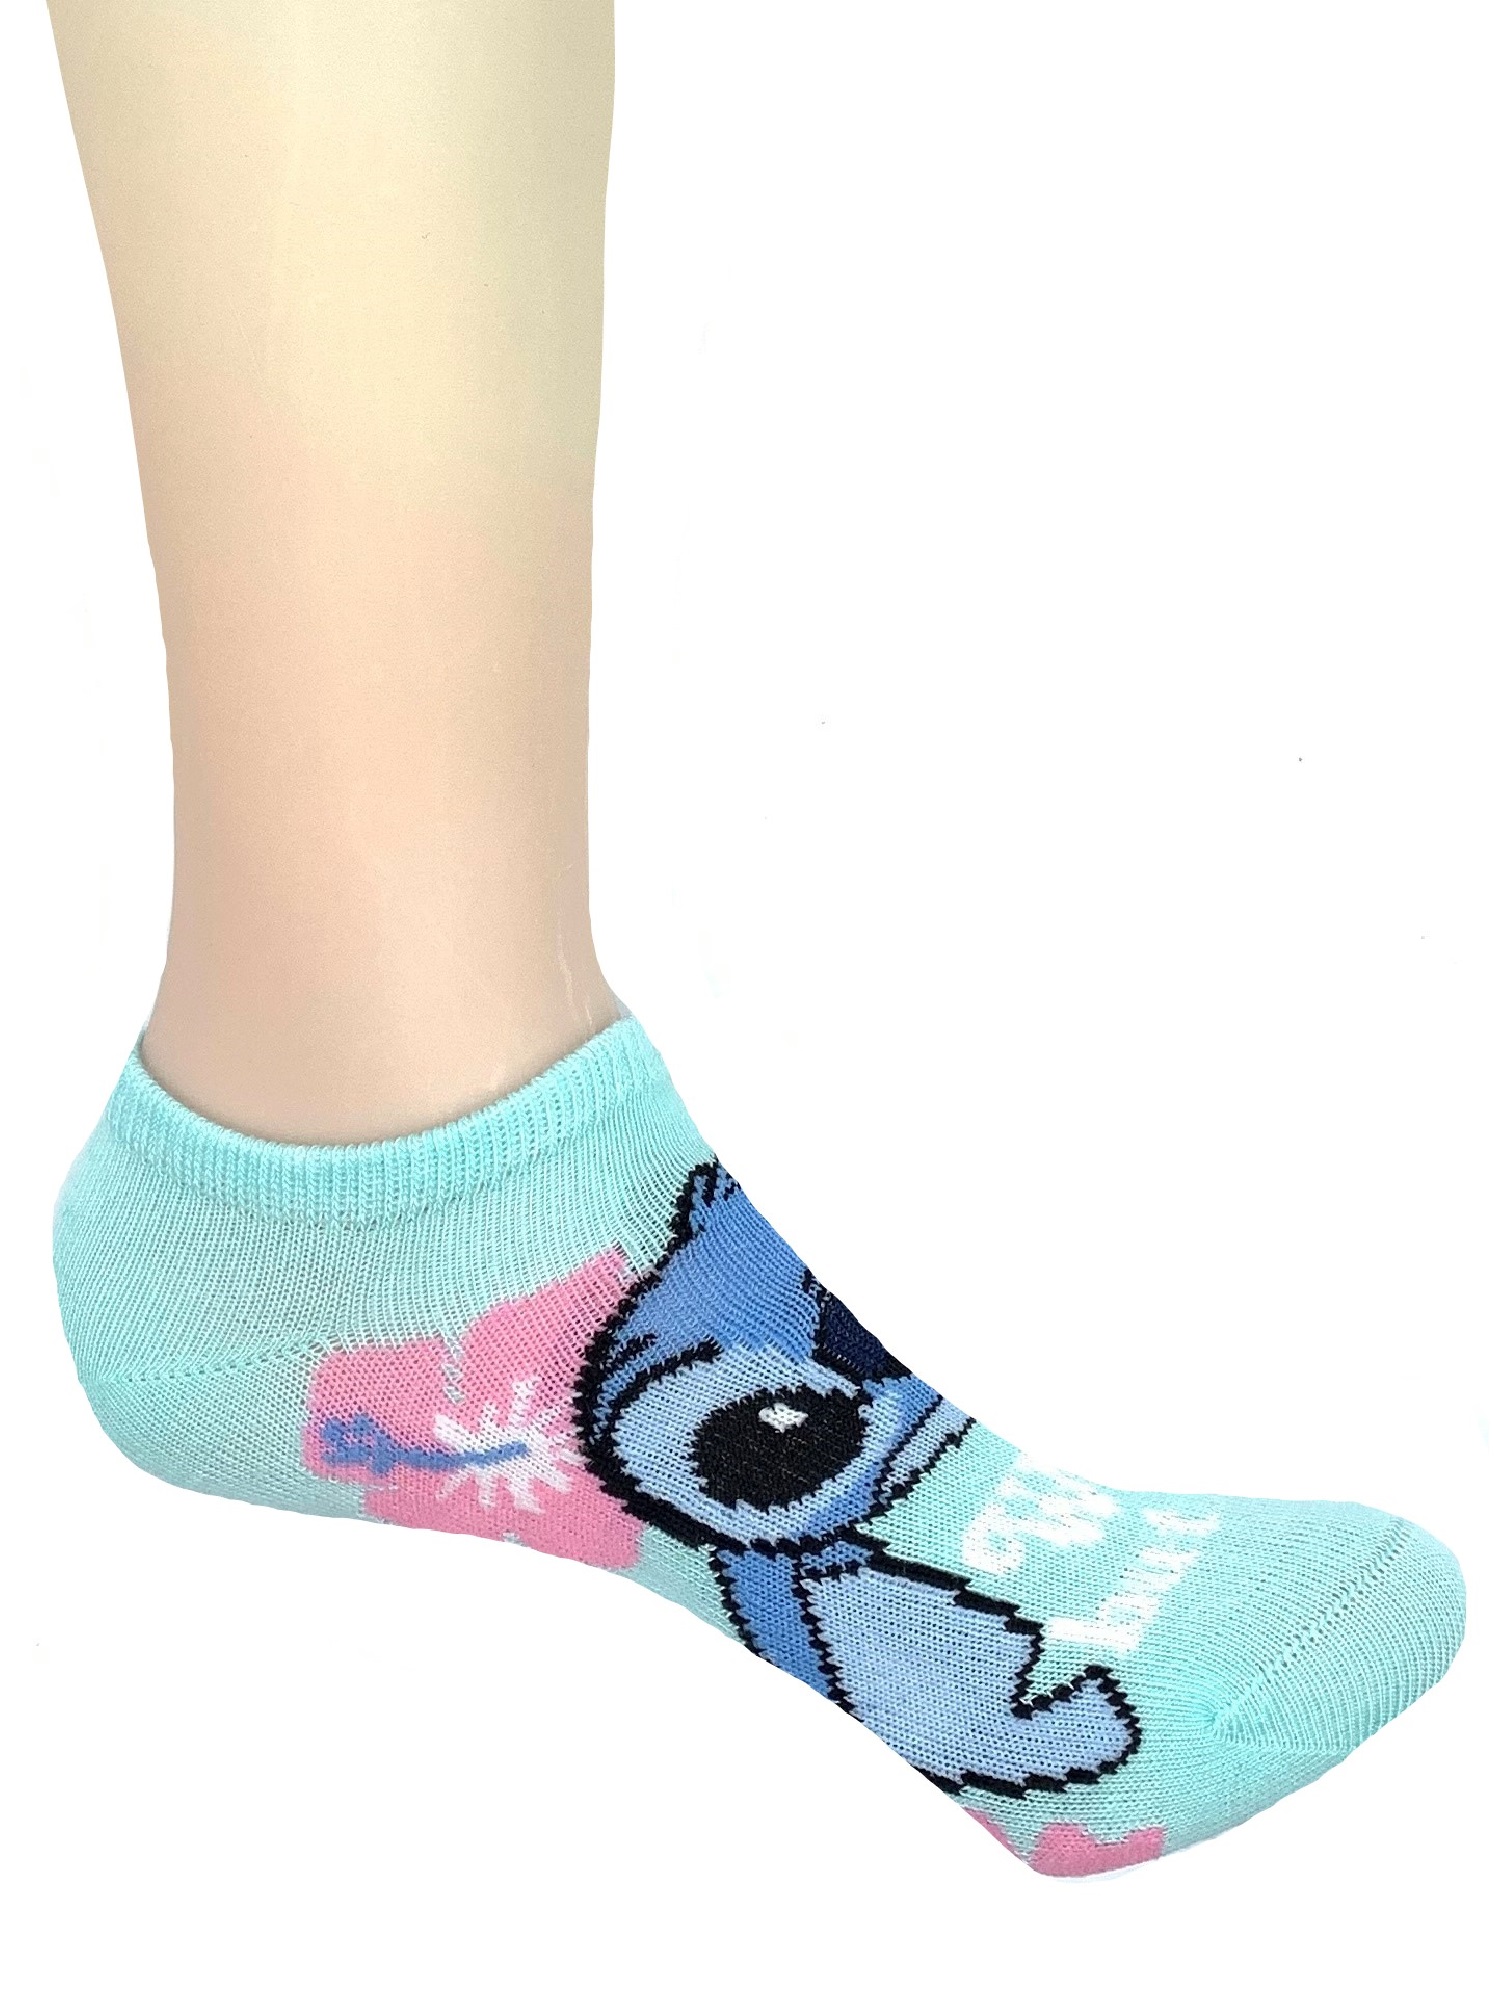 Lilo & Stitch Girls' No-Show Socks - S - L Each